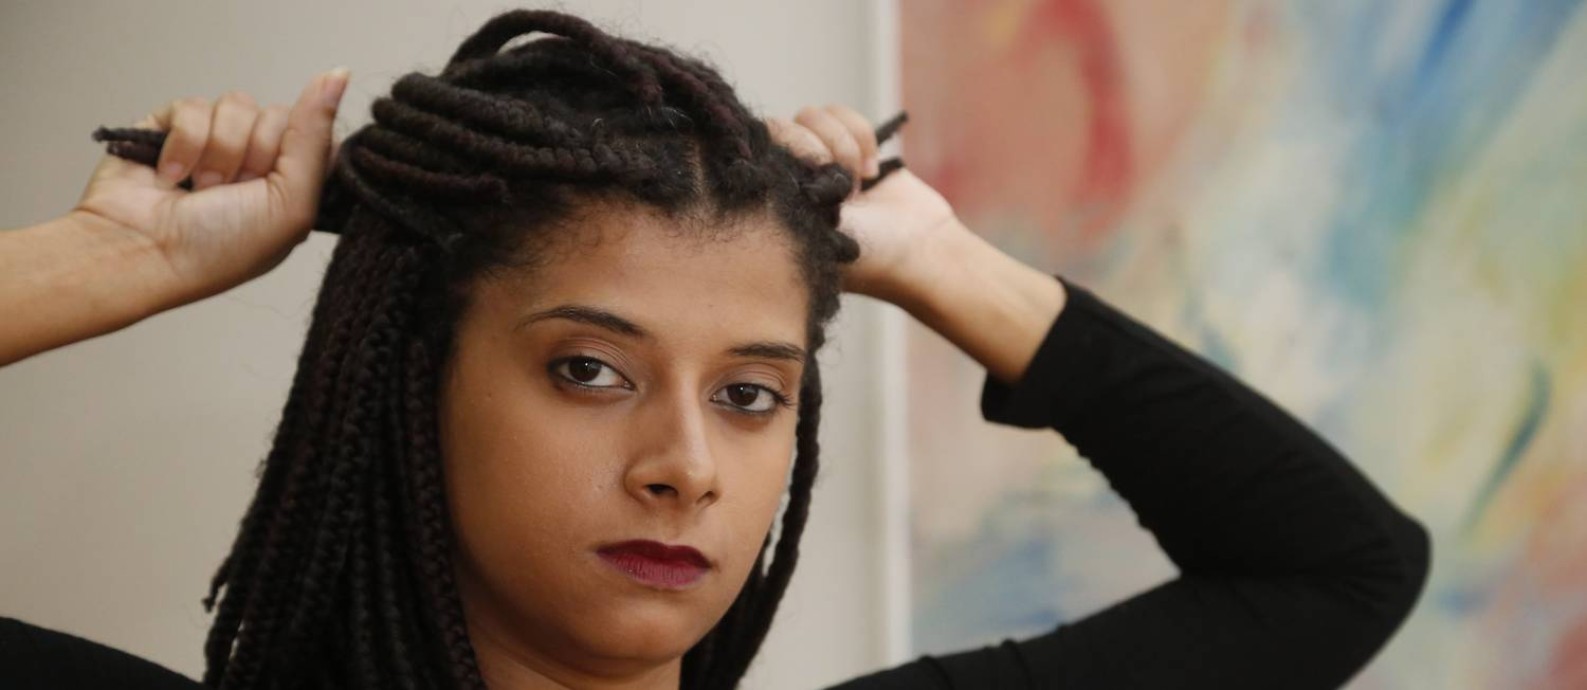 Ana Míria Carinhanha, de 28 anos, foi vítima de racismo em uma lanchonete na Zona Sul Foto: Agência O Globo